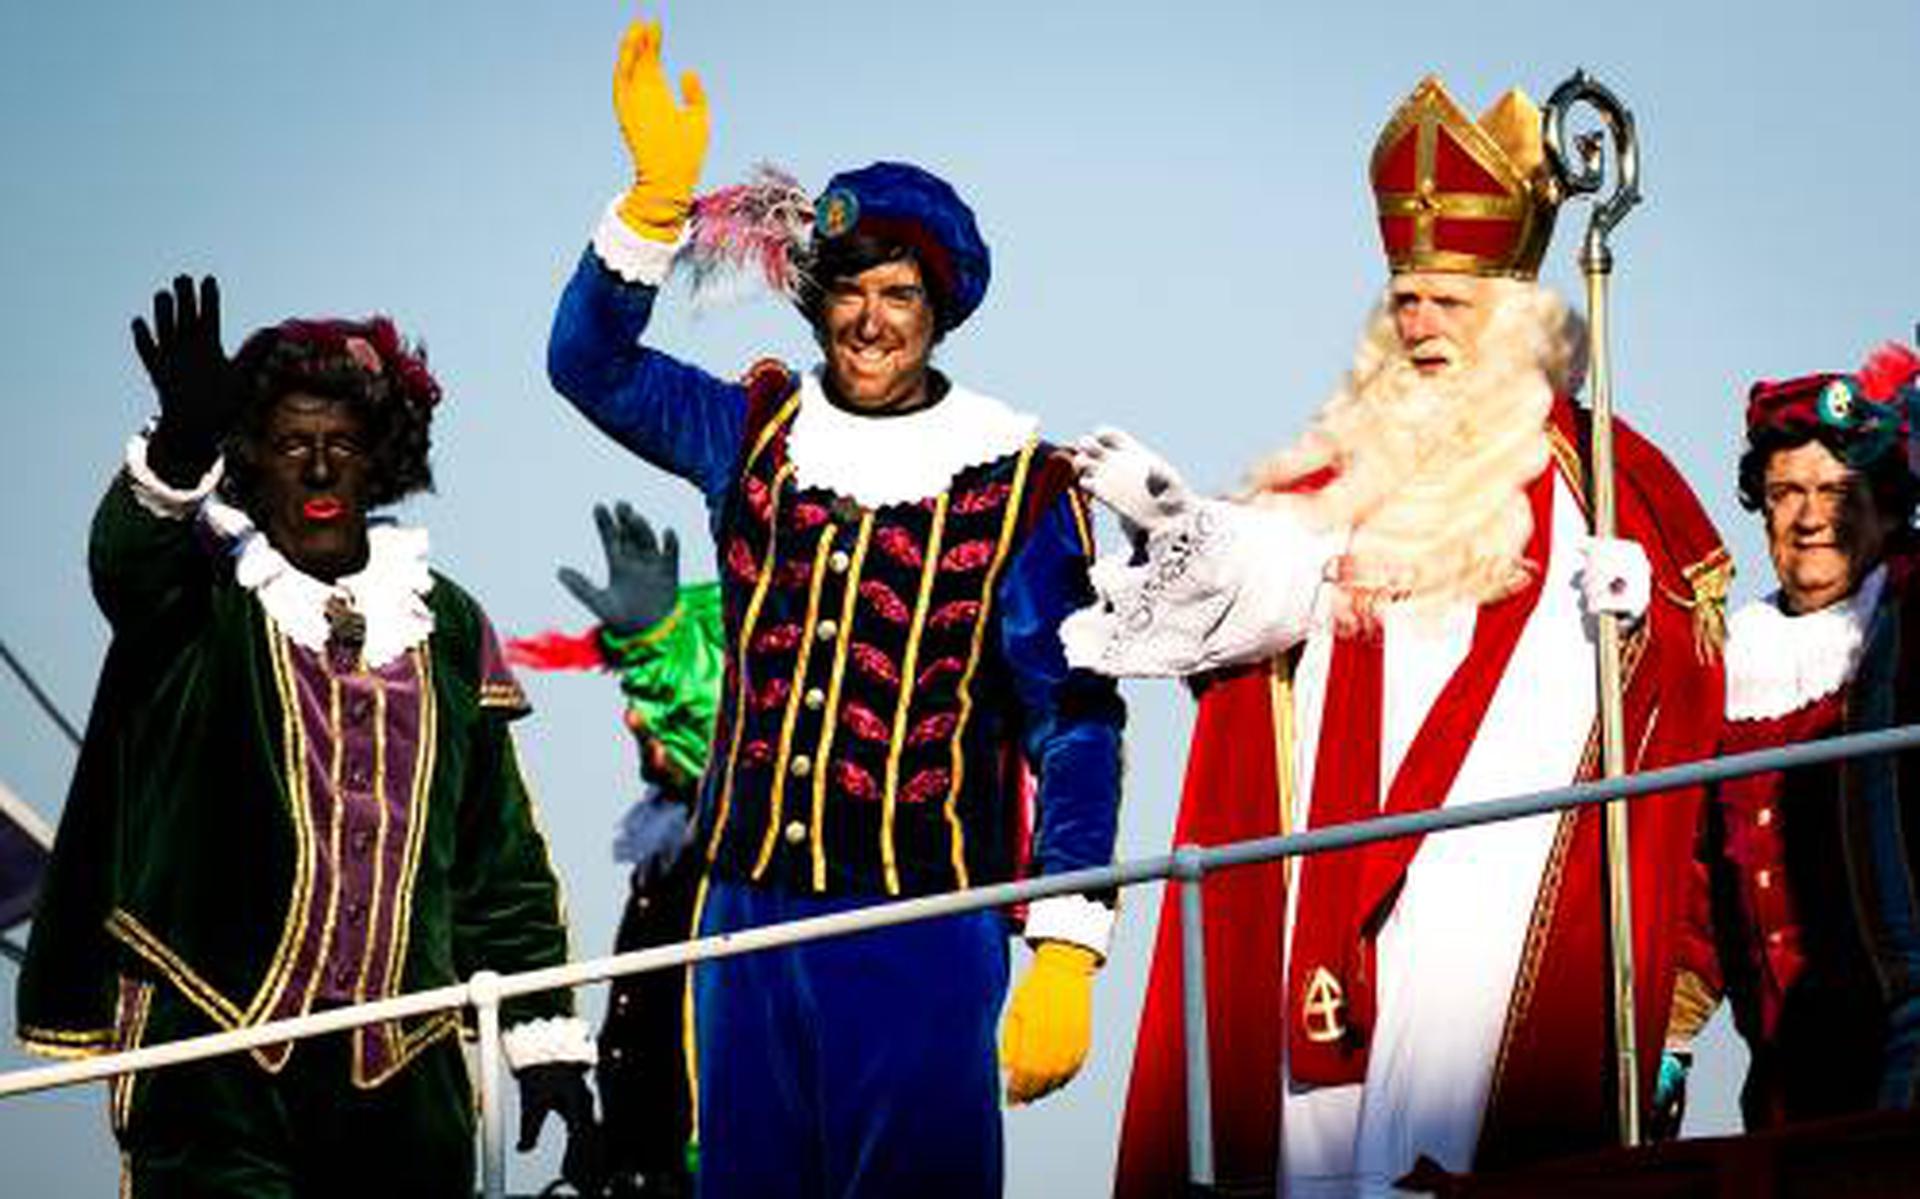 baai Deens Of Intocht Sinterklaas trekt 1,9 miljoen kijkers - Leeuwarder Courant